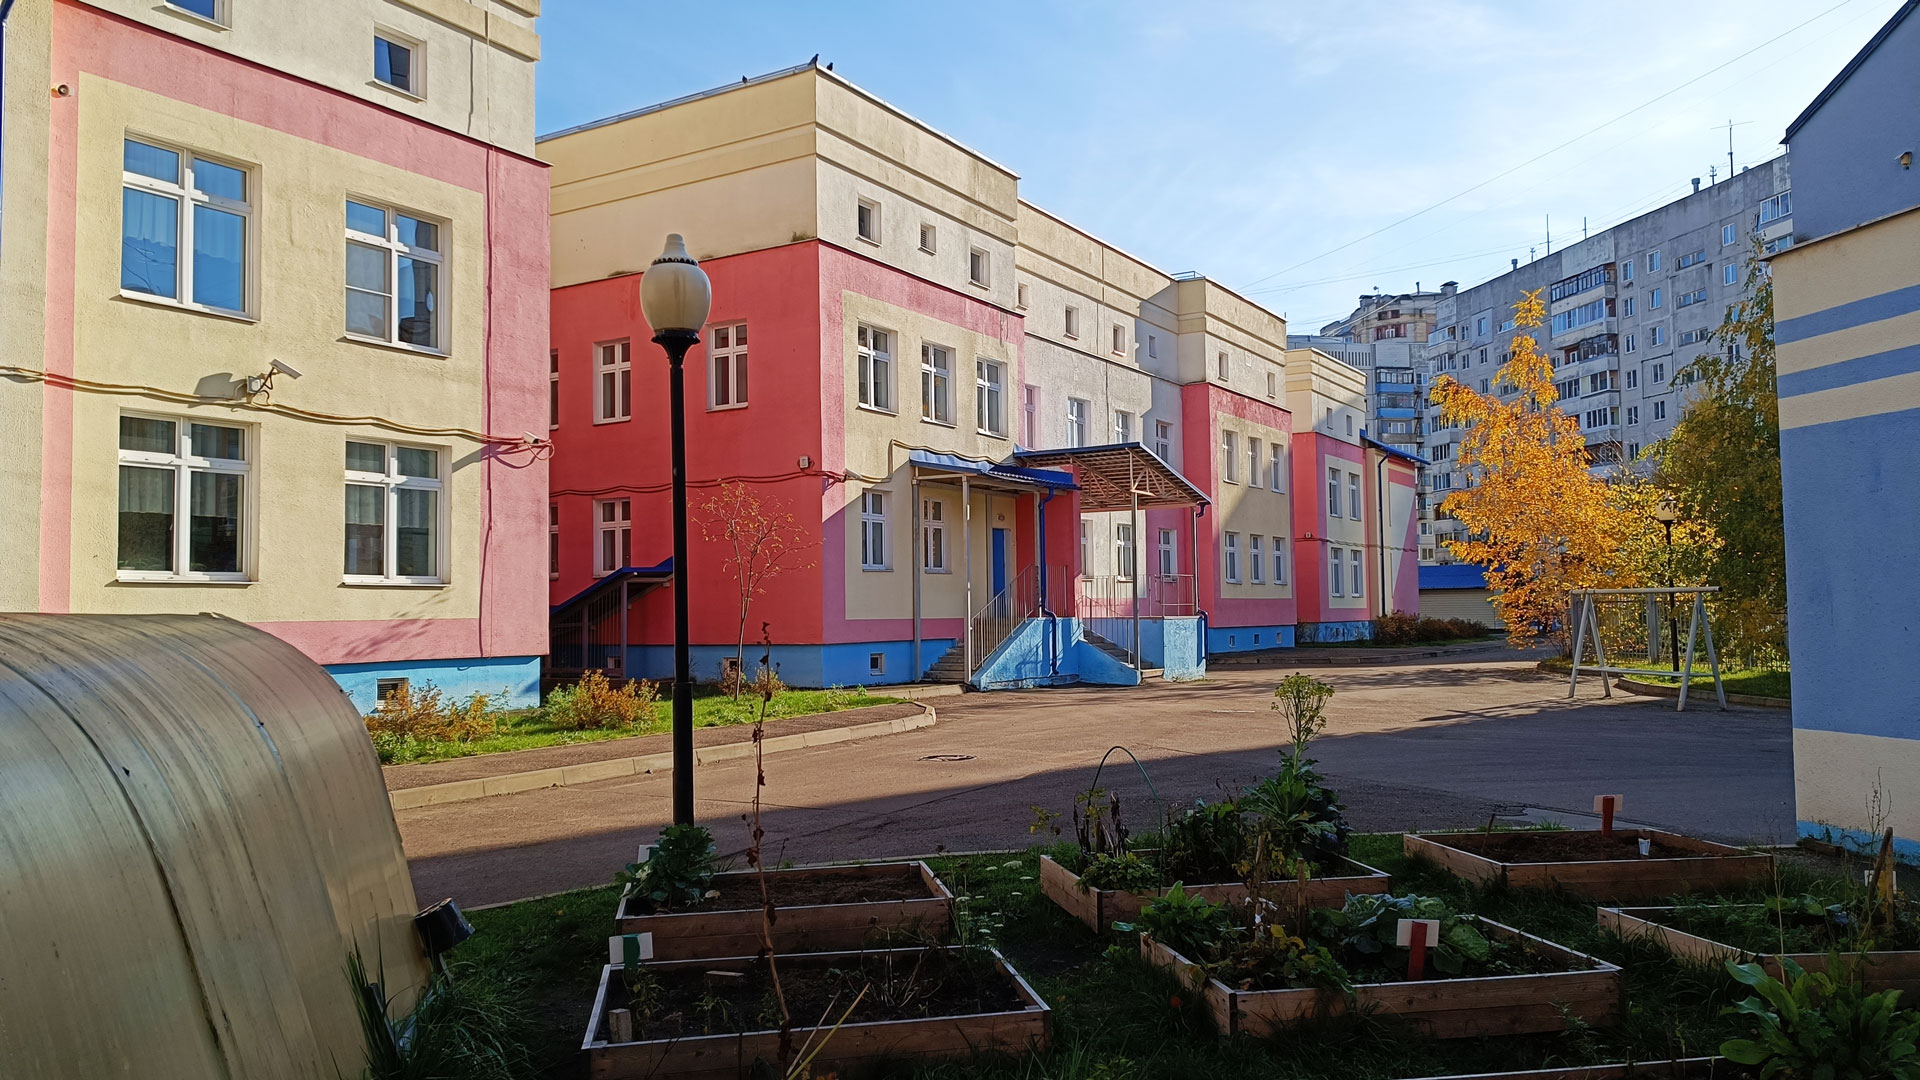 Детский сад 228 Ярославль: общий вид здания и территории.